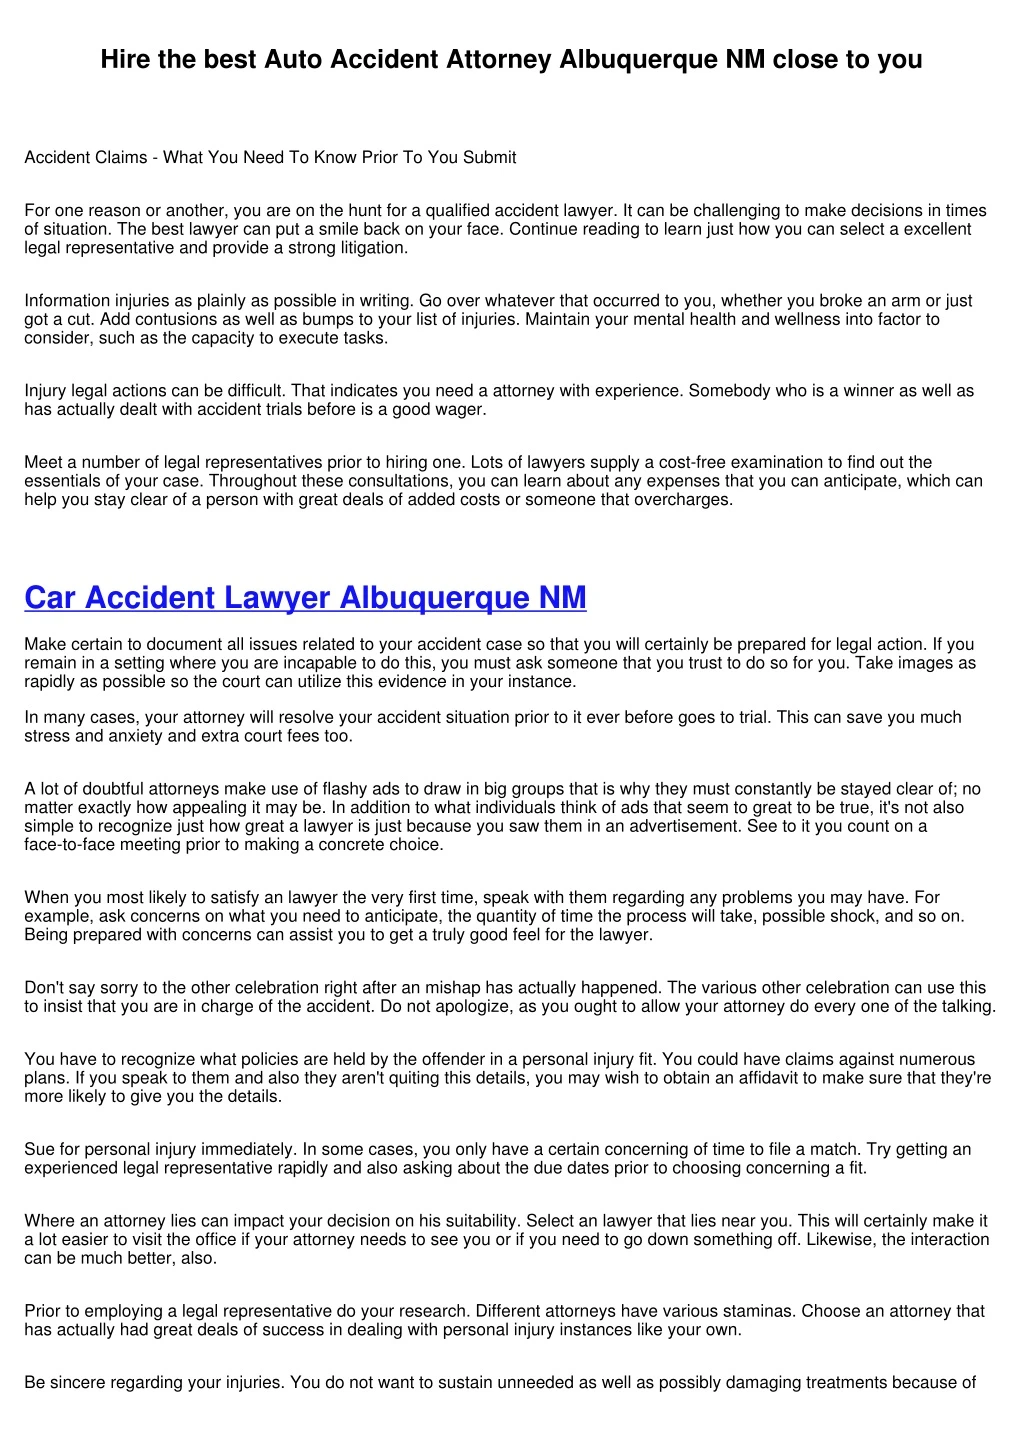 hire the best auto accident attorney albuquerque